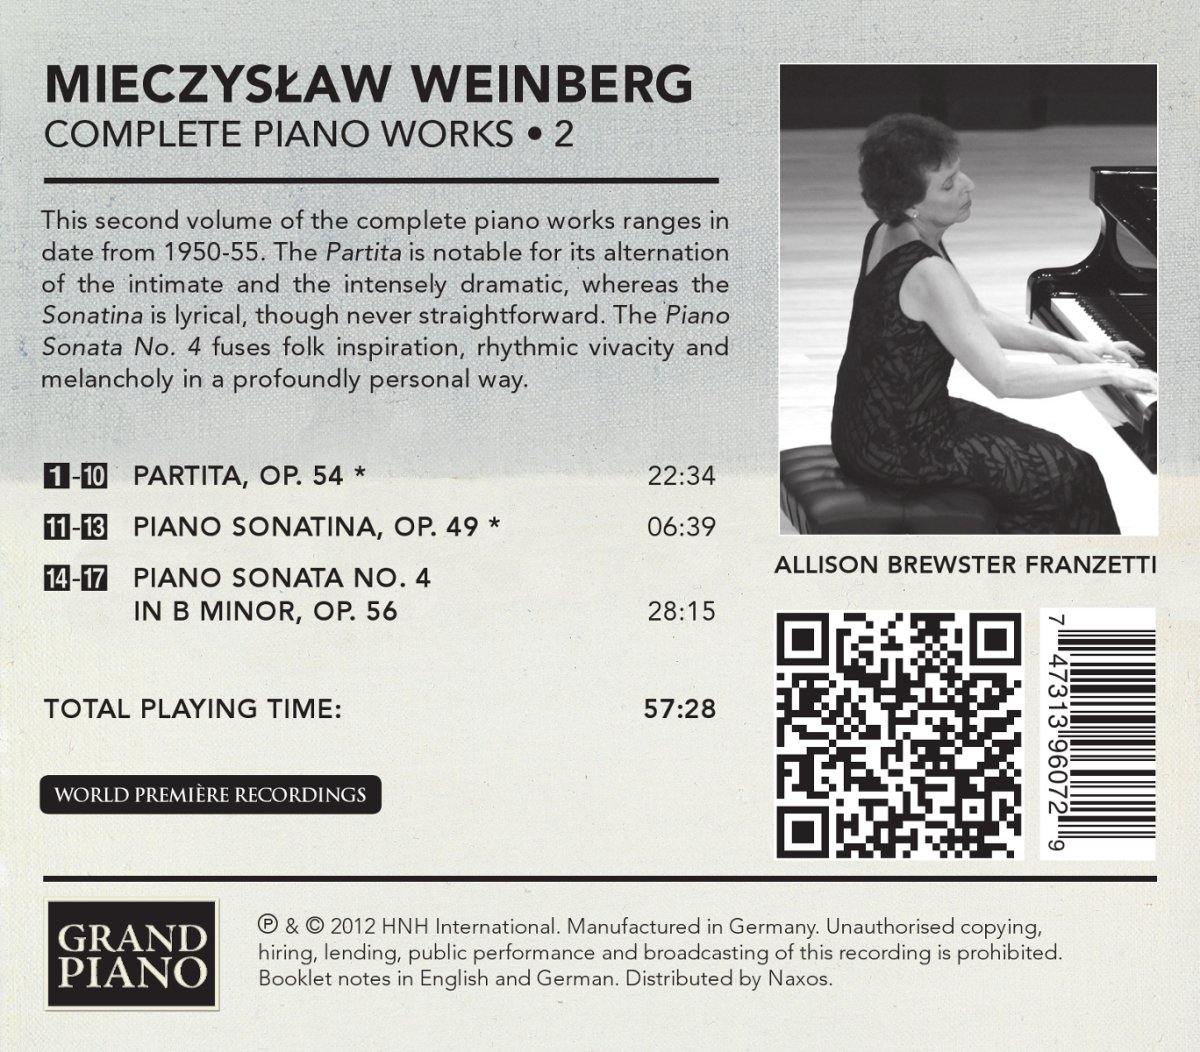 Allison Brewster Franzetti 바인베르크: 피아노 전곡 2집 - 파르티타, 소나티나, 소나타 4번 (Weinberg: Complete Piano Works Vol. 2)